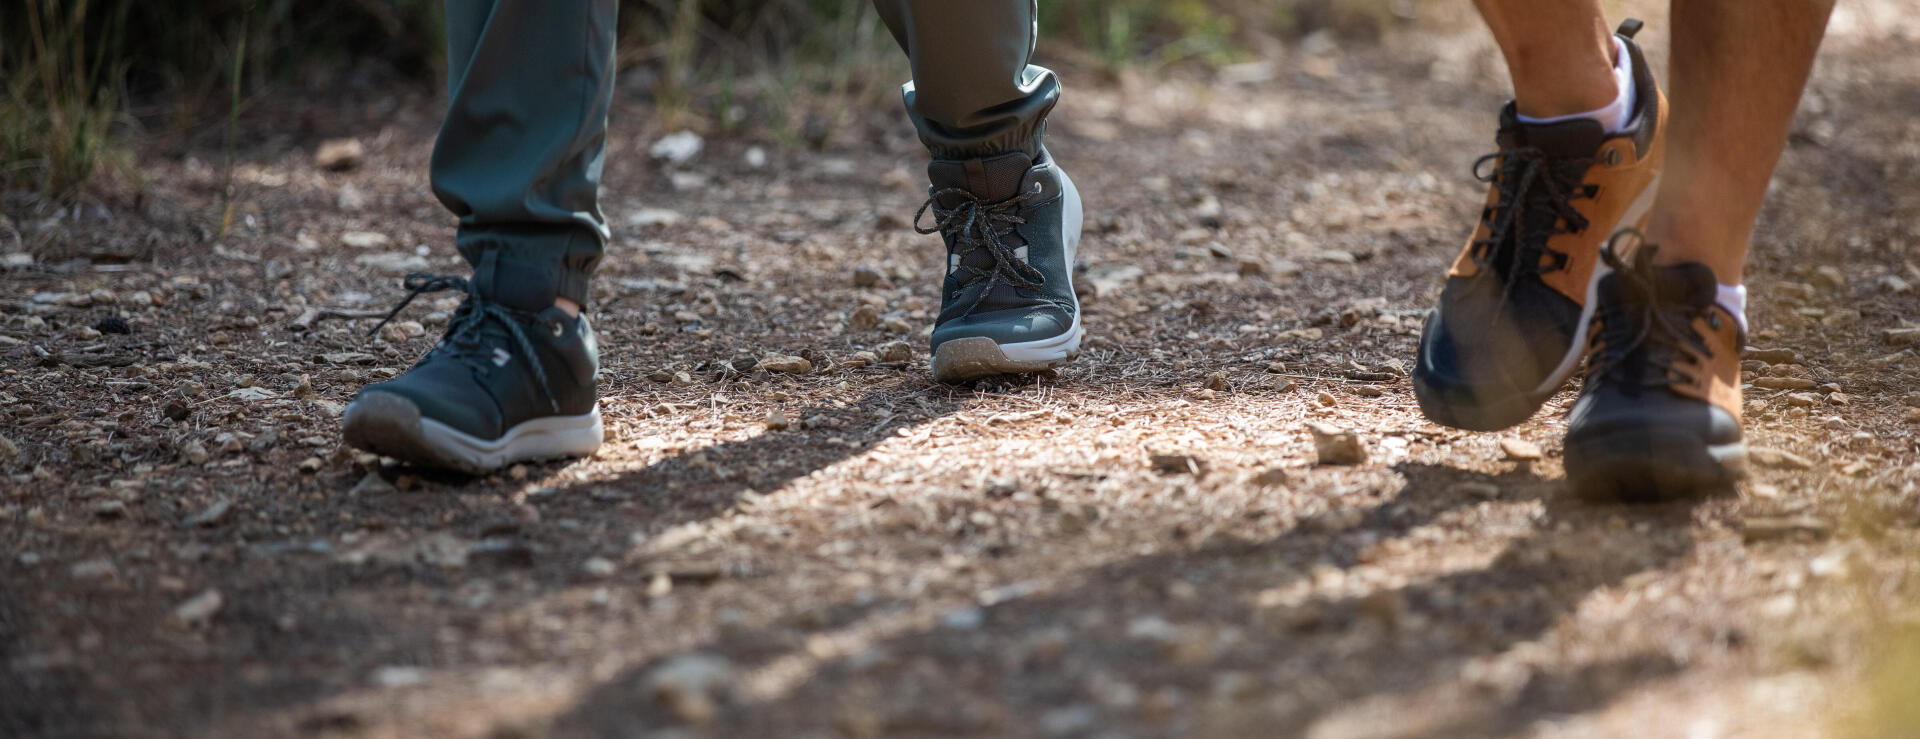 Come prendersi cura delle scarpe da trekking